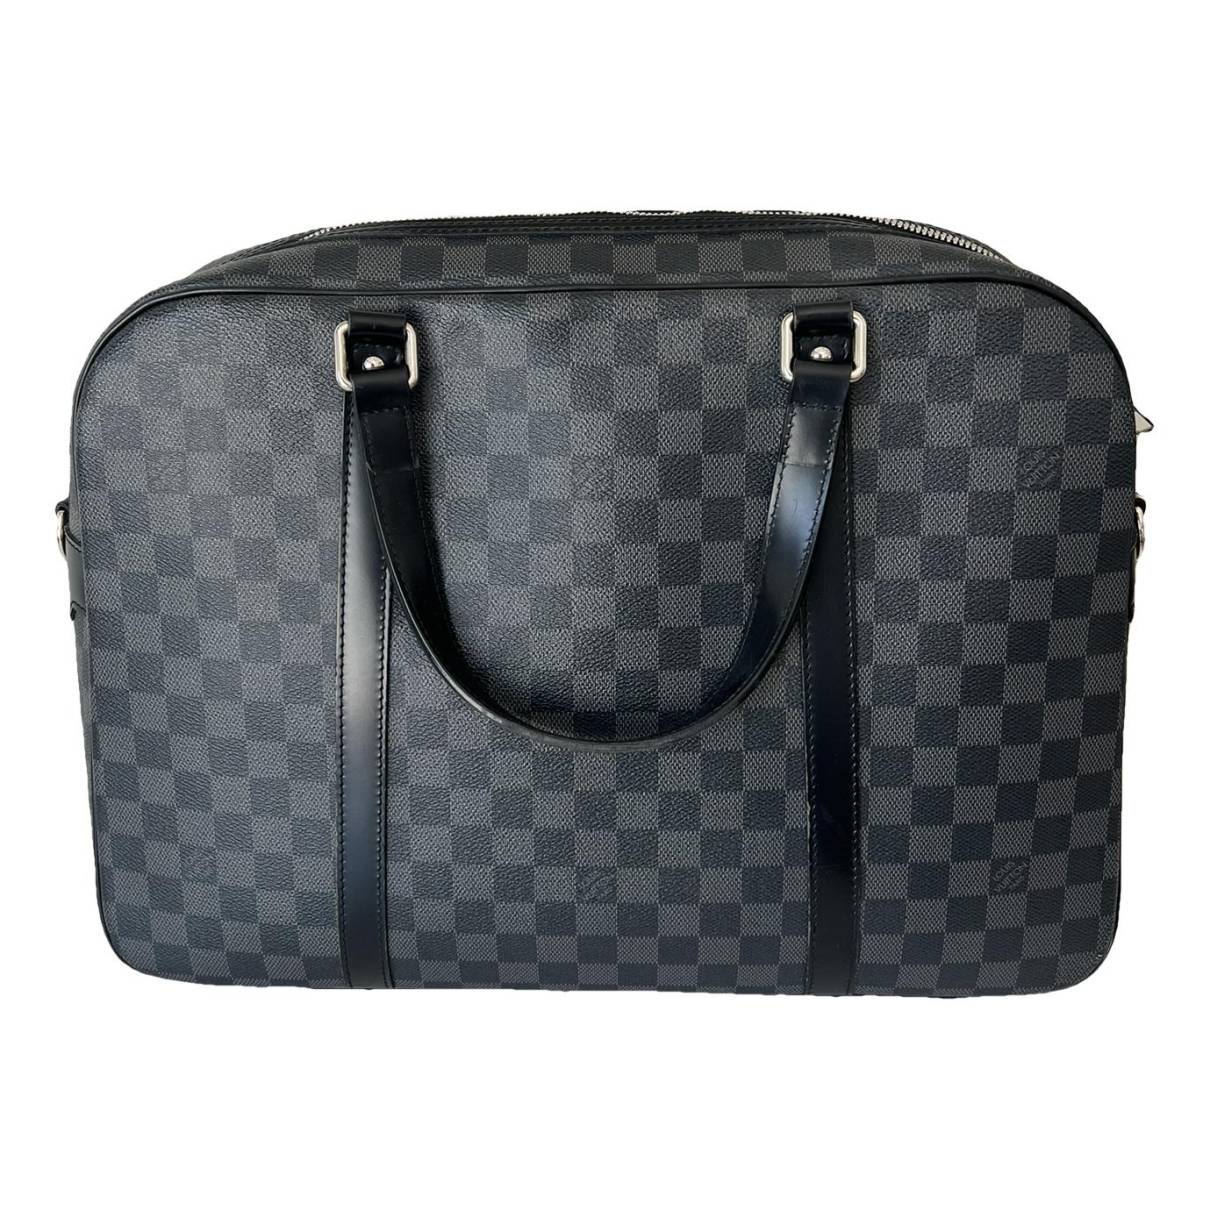 Porte documents jour leather travel bag Louis Vuitton Black in